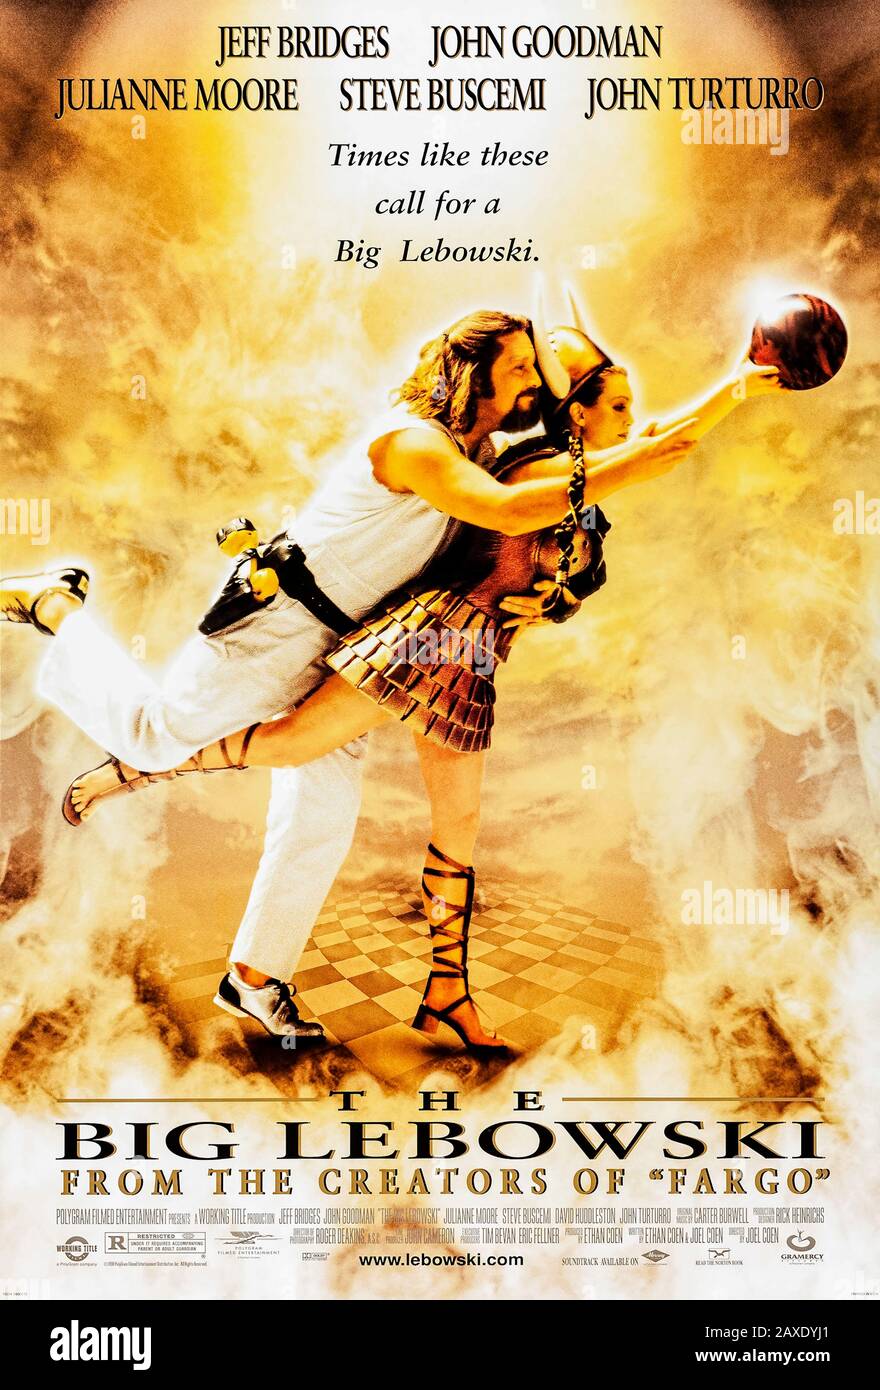 The Big Lebowski (1998) dirigido por Joel y Ethan Coen y protagonizado por Jeff Bridges, John Goodman, Julianne Moore y John Turturro. Clásico de culto sobre 'el dude' y su viaje para la compensación por su alfombra arruinada. Foto de stock